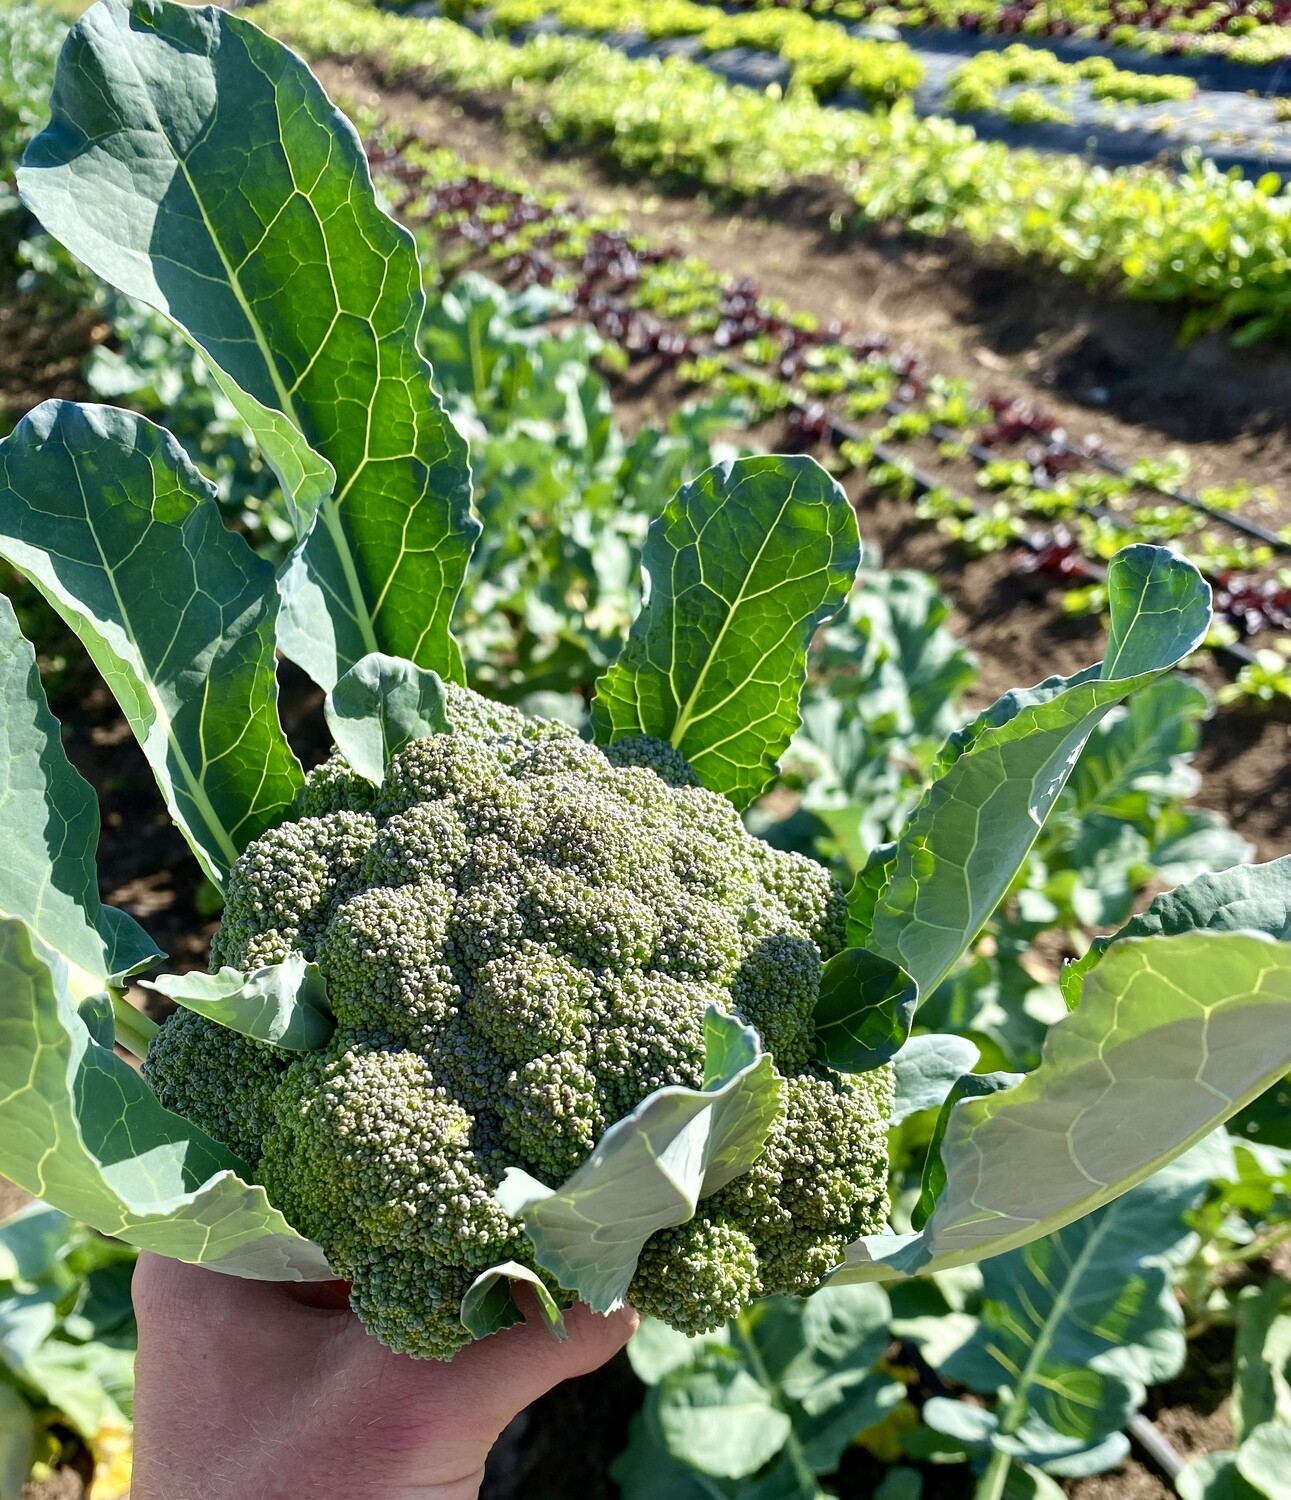 Broccoli (1lb florets)